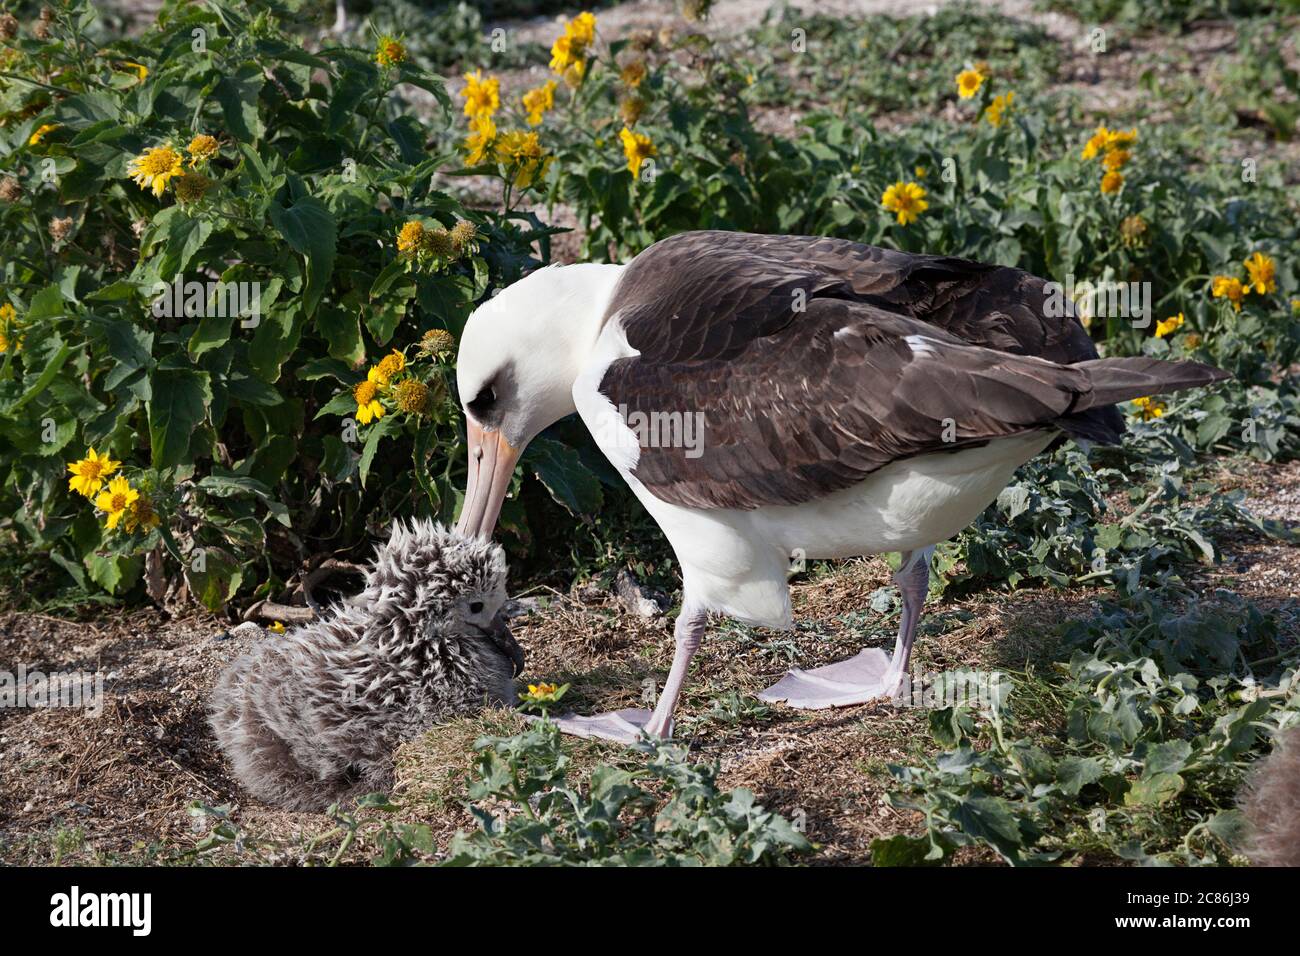 Laysan albatros, Phoebastria immutabilis, poussin de prémenage, Sand Island, refuge national de faune de Midway Atoll, Papahanaumokuakea Marine National Mond. Banque D'Images